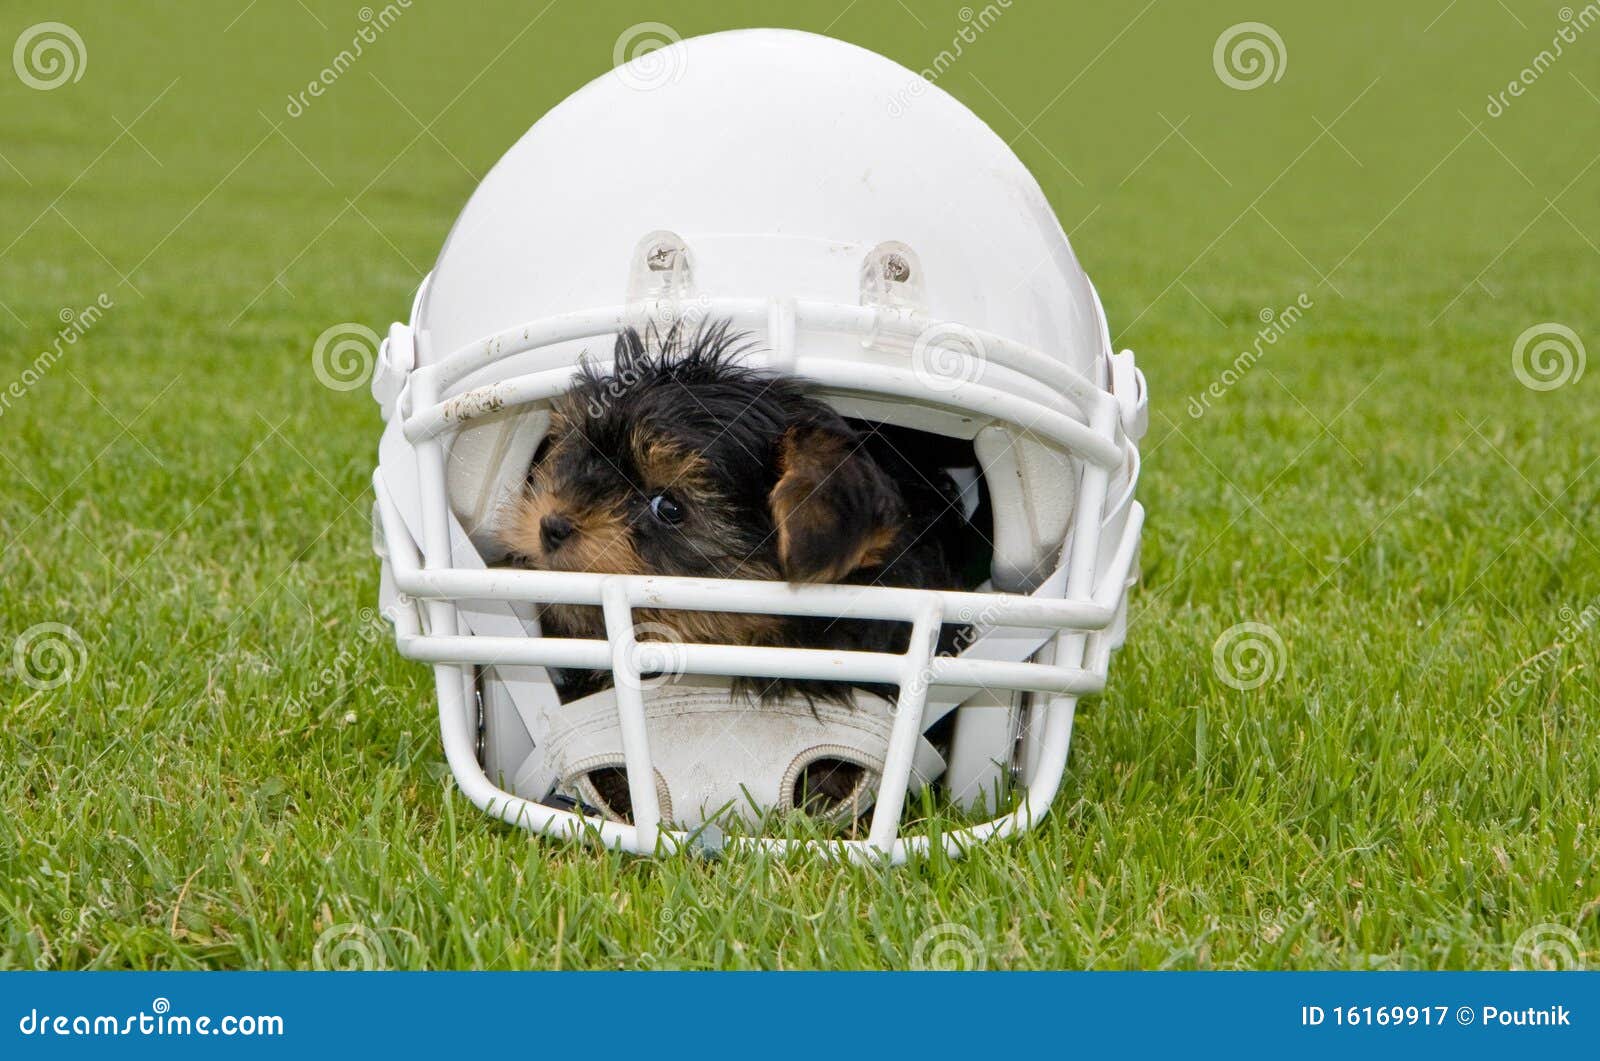 dog football helmet